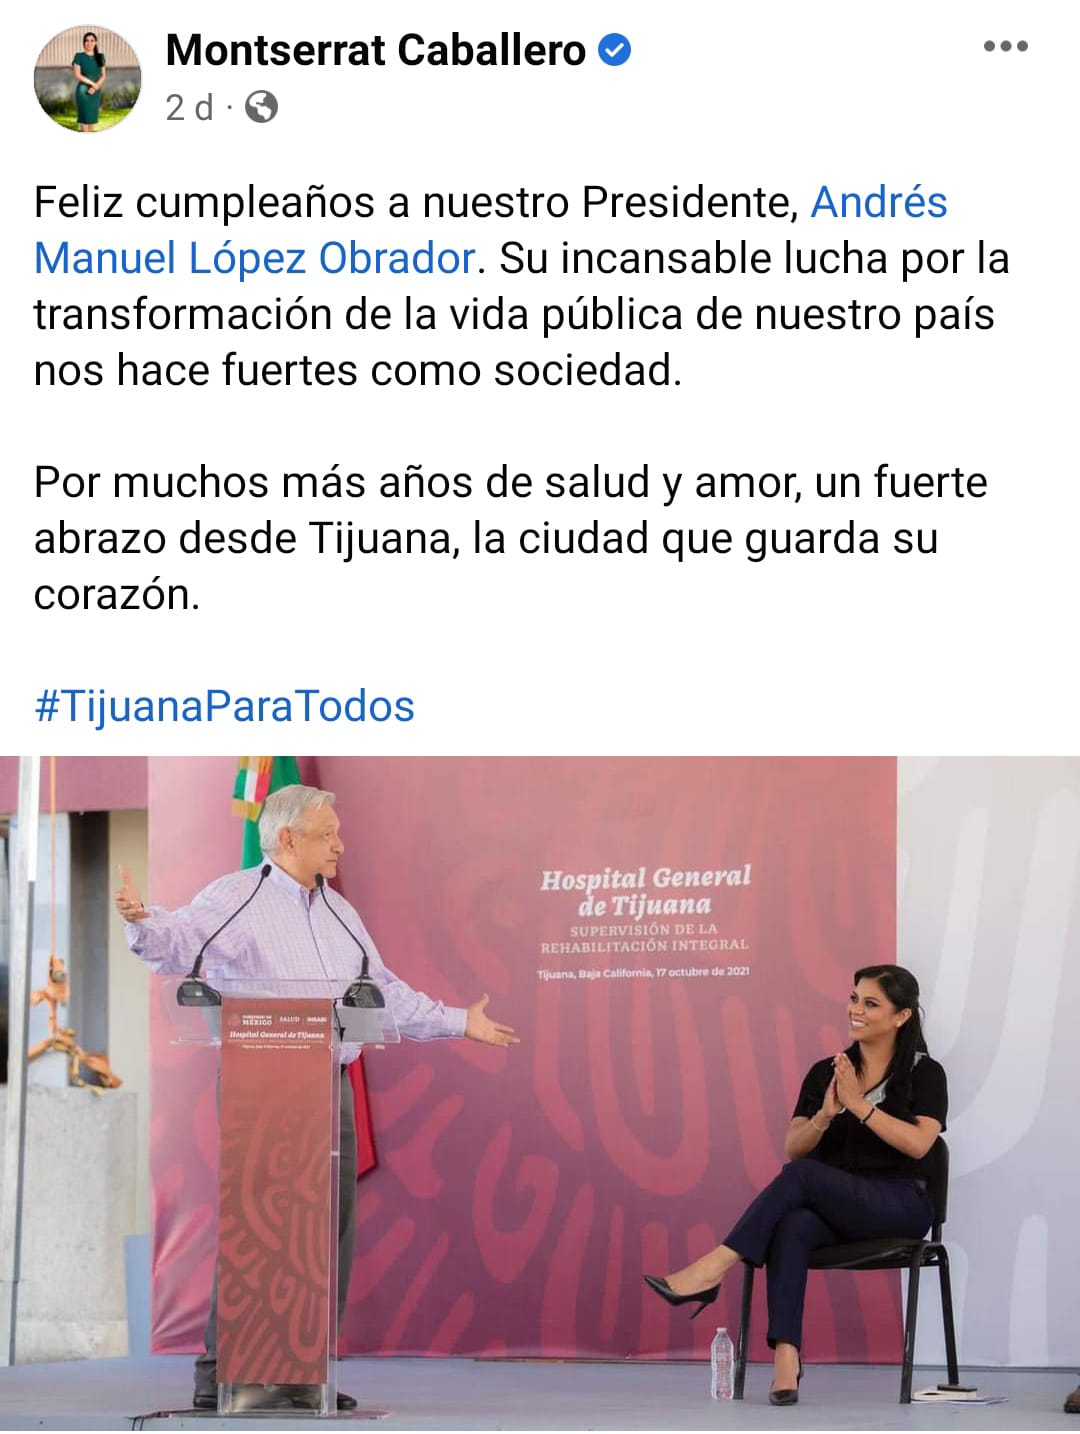 Quien también lo felicitó fue la Alcaldesa de Tijuana, Montserrat Caballero